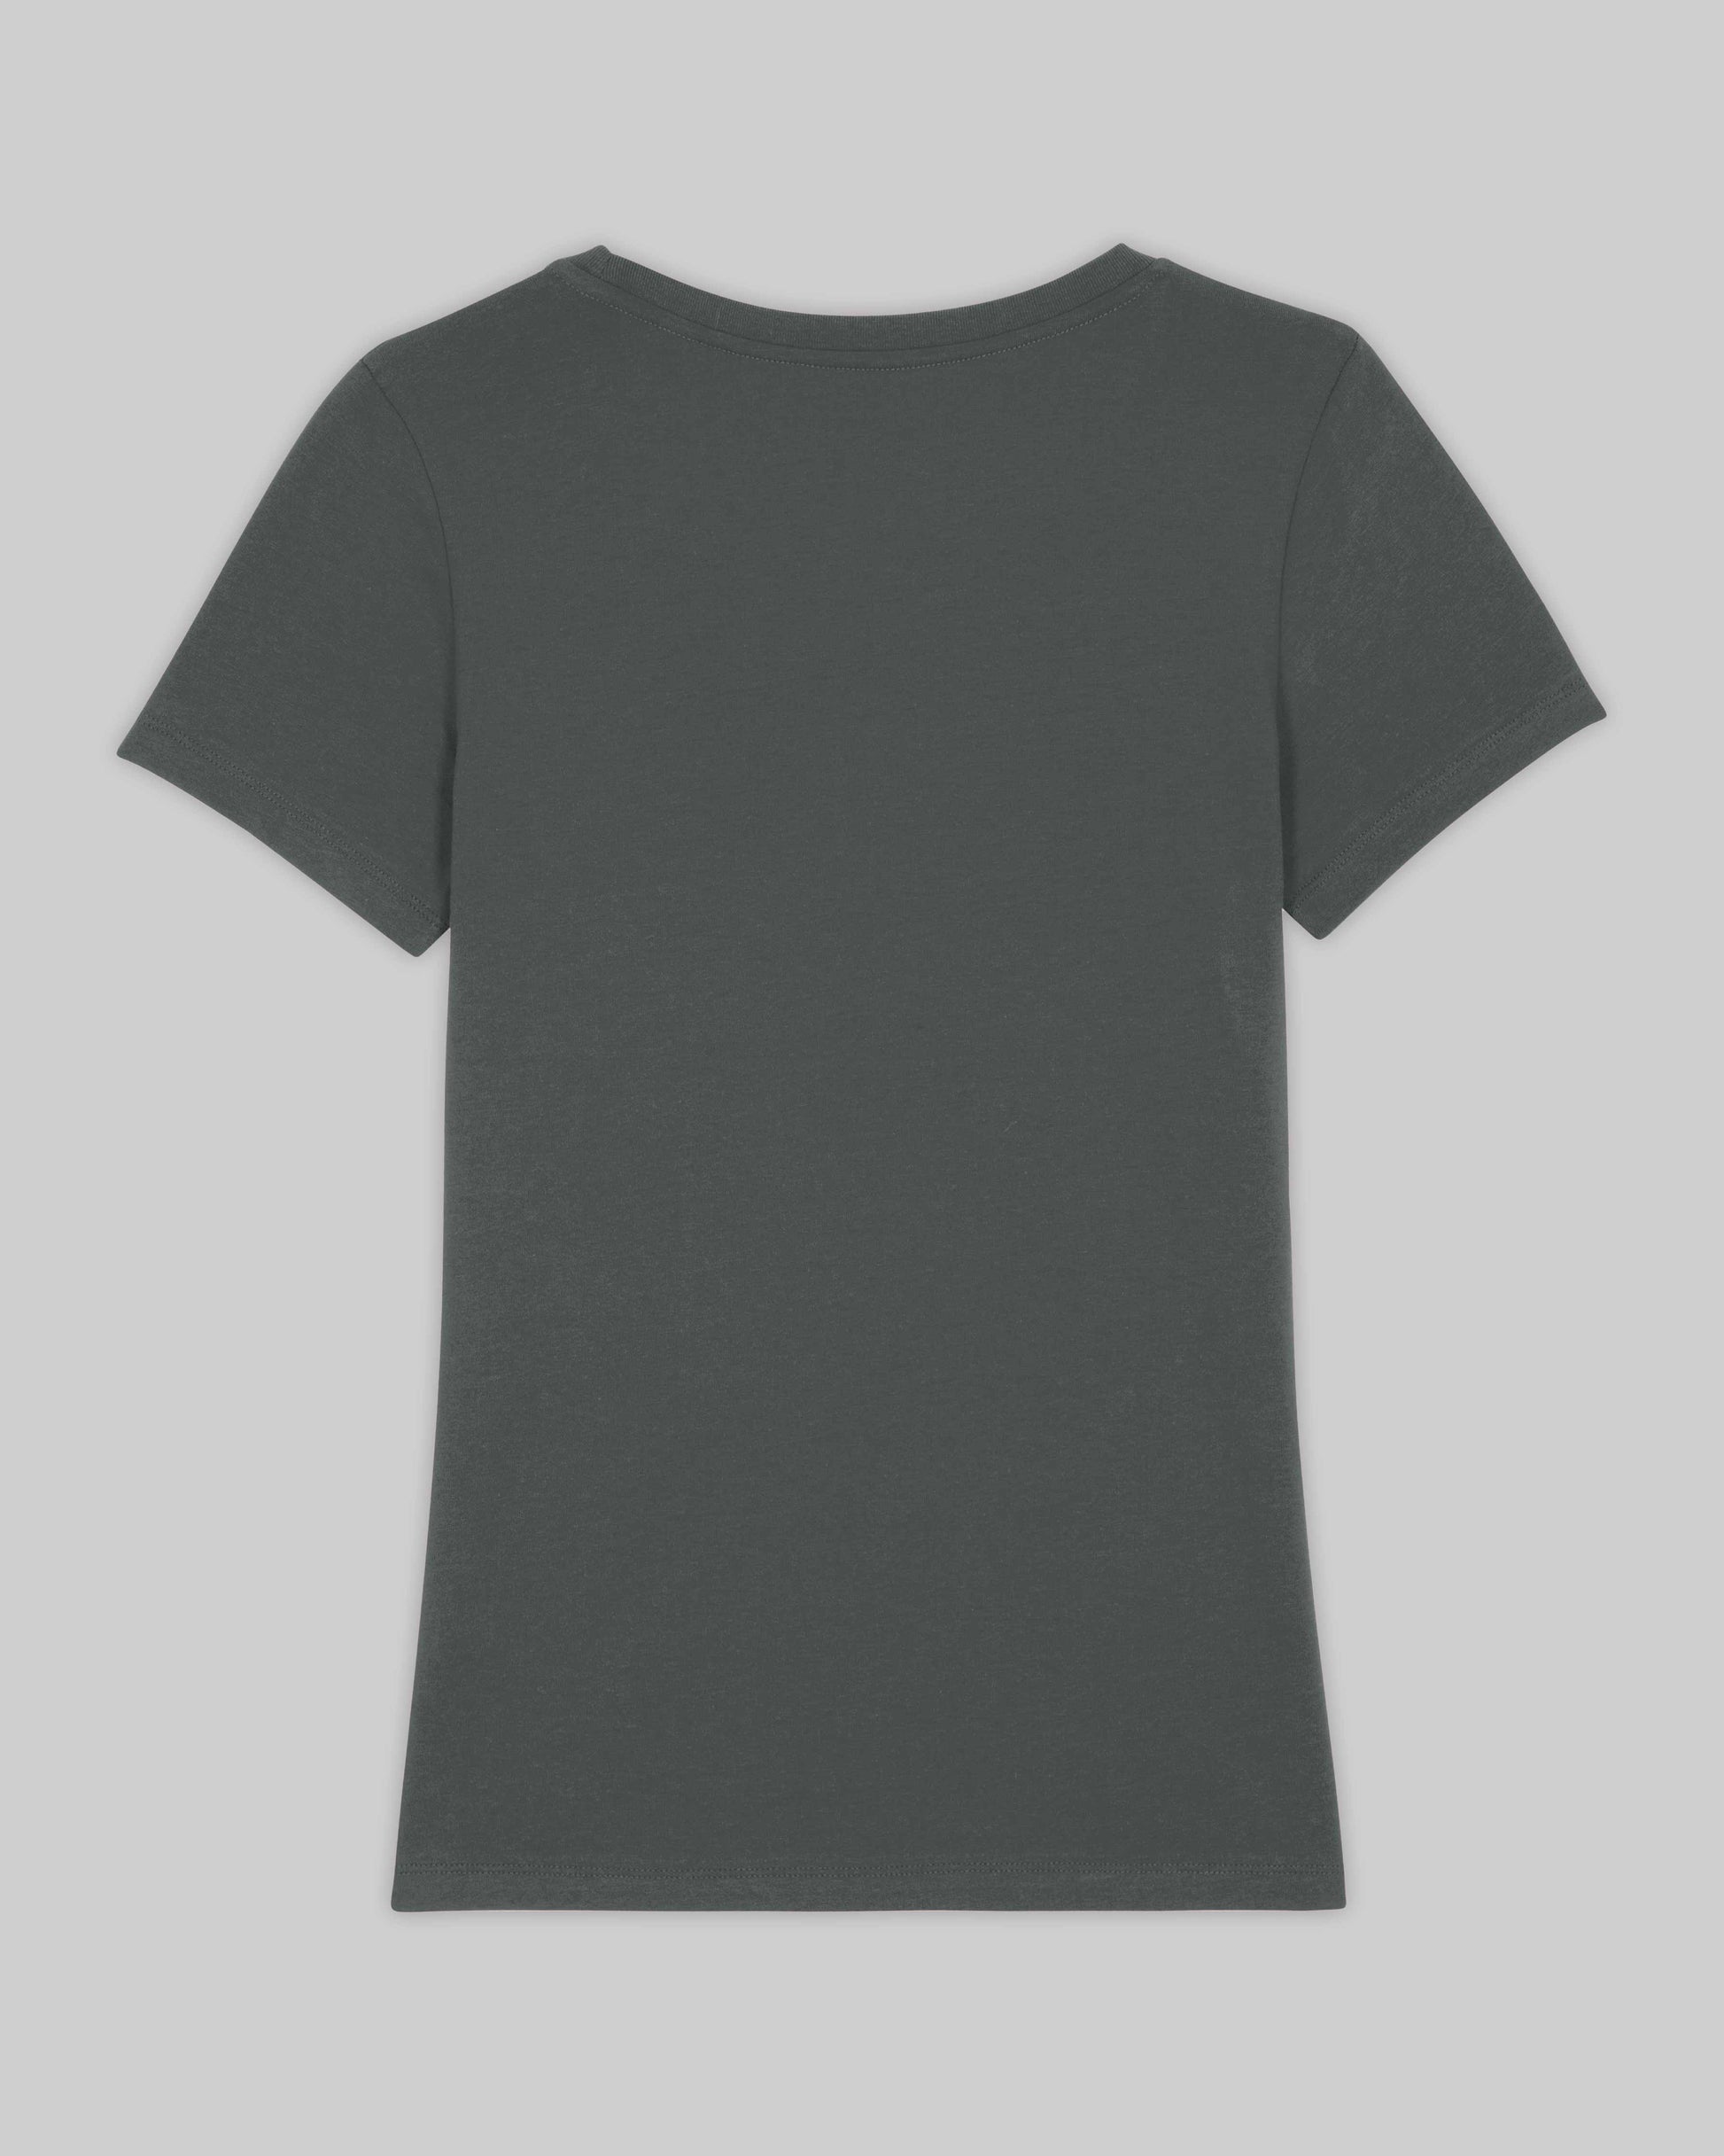 EINHORST® Organic Shirt tailliert in "Anthracite" mit dem Motiv "equal Regenbogen" in der Kombination weißer Regenbogen mit weißer Schrift, Bild von Shirt von hinten